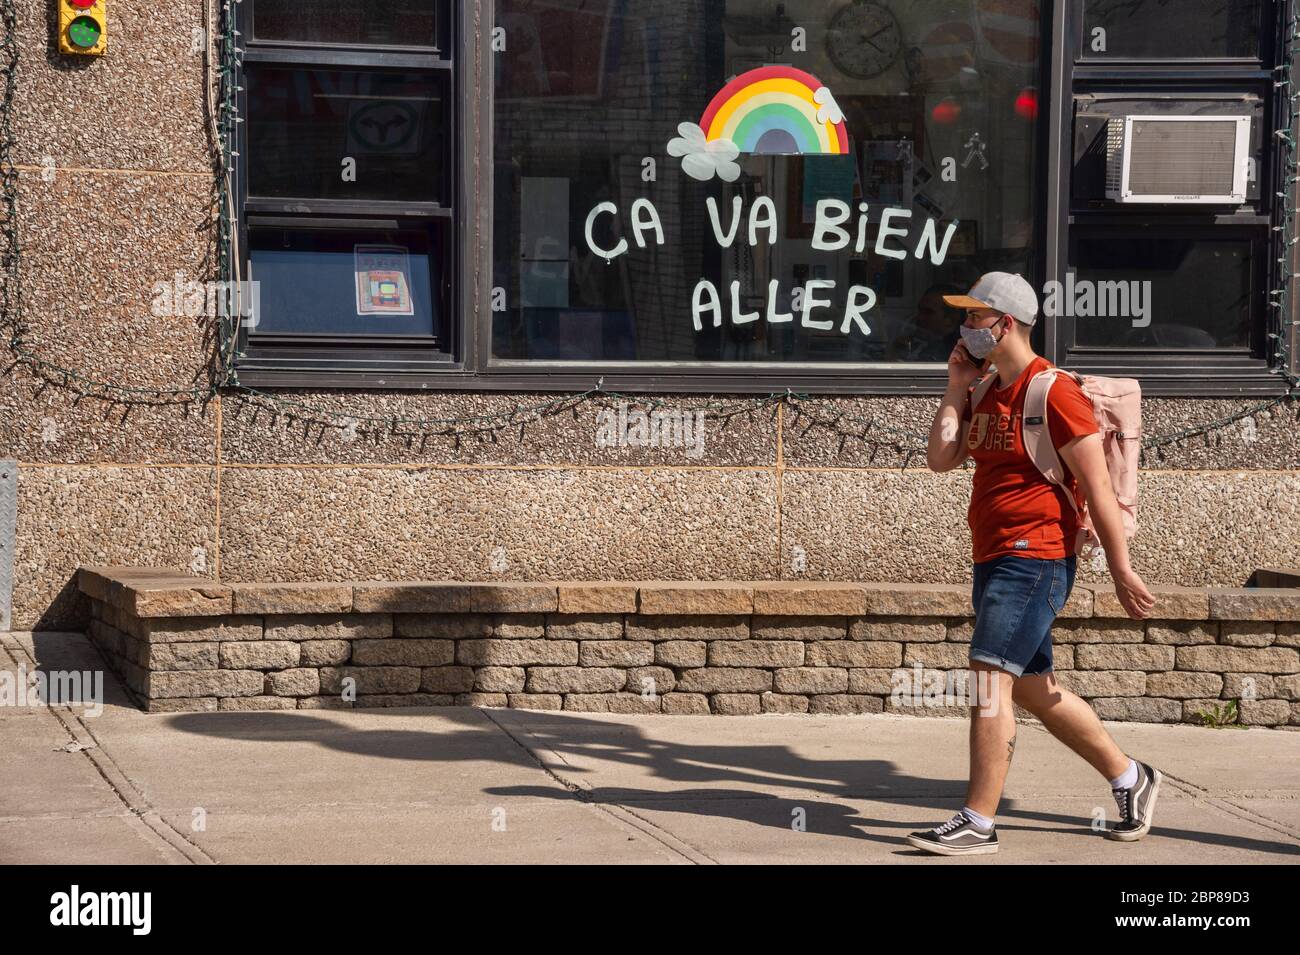 Montreal, CA - 17 de mayo de 2020: Joven con máscara para la protección contra COVID-19 montando una bicicleta frente al arco iris dibujando en la calle Masson. Foto de stock